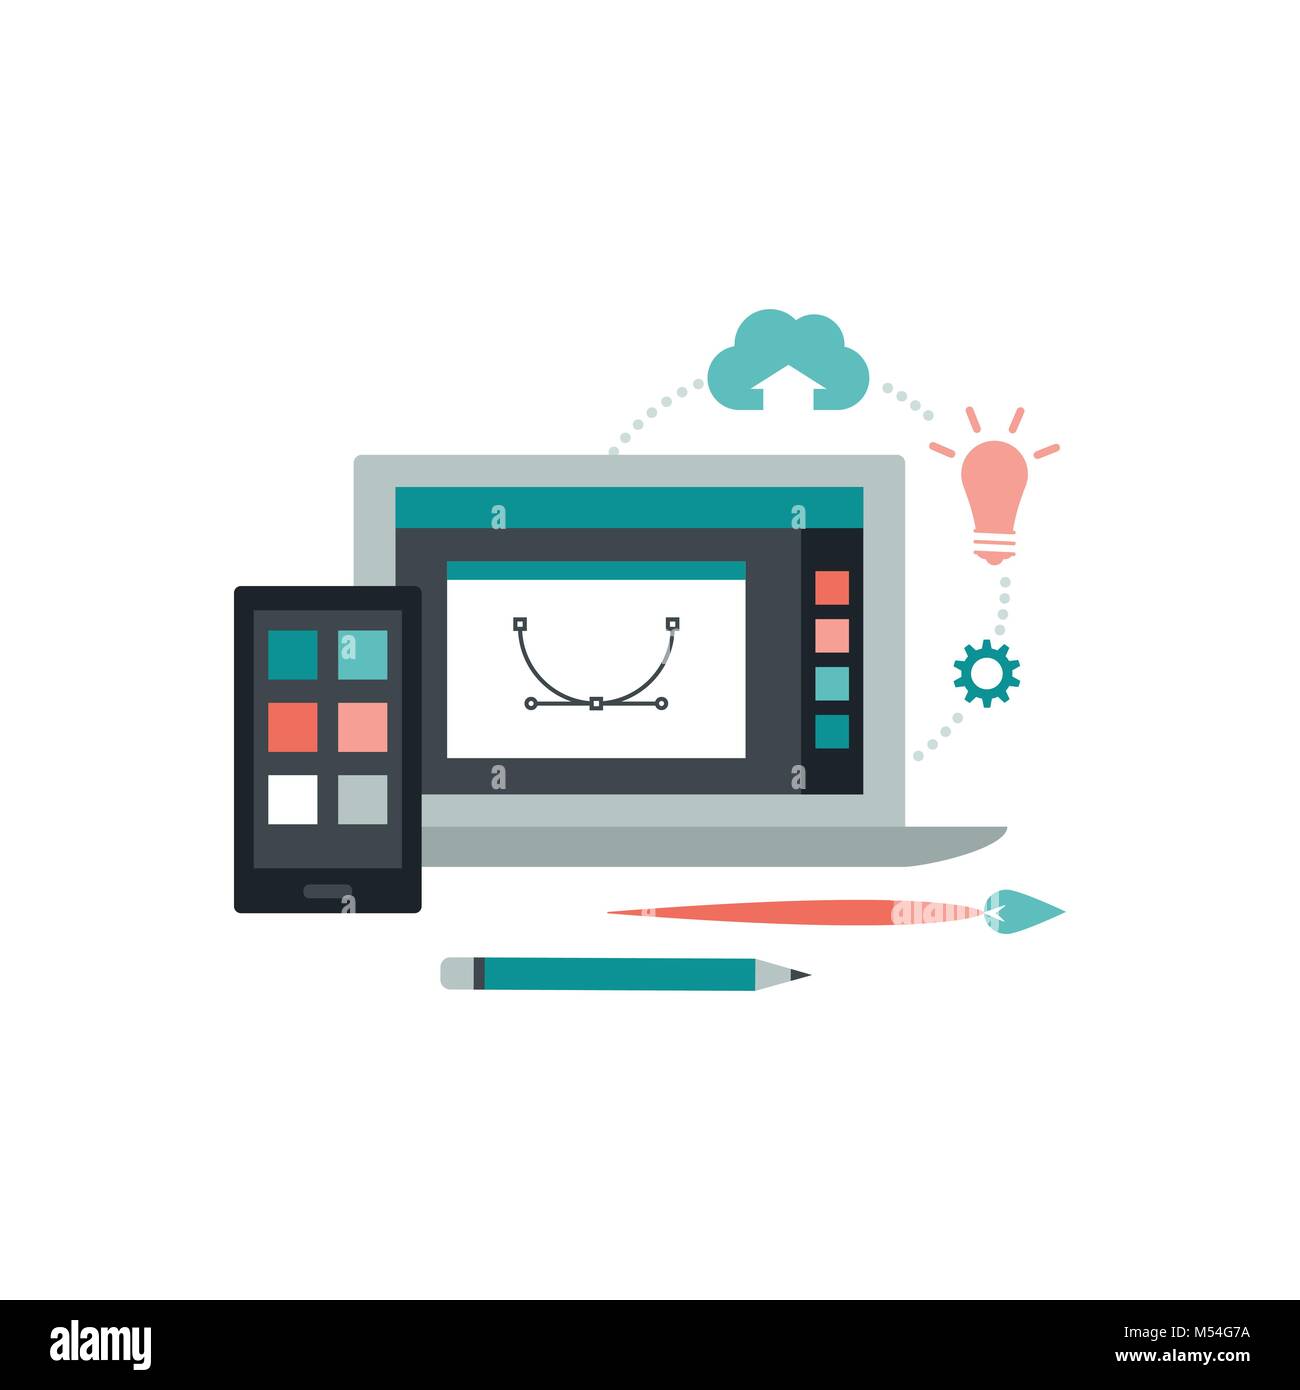 Graphisme et illustration : ordinateur portable avec logiciel d'illustration vectorielle, smartphone et outils créatifs Illustration de Vecteur